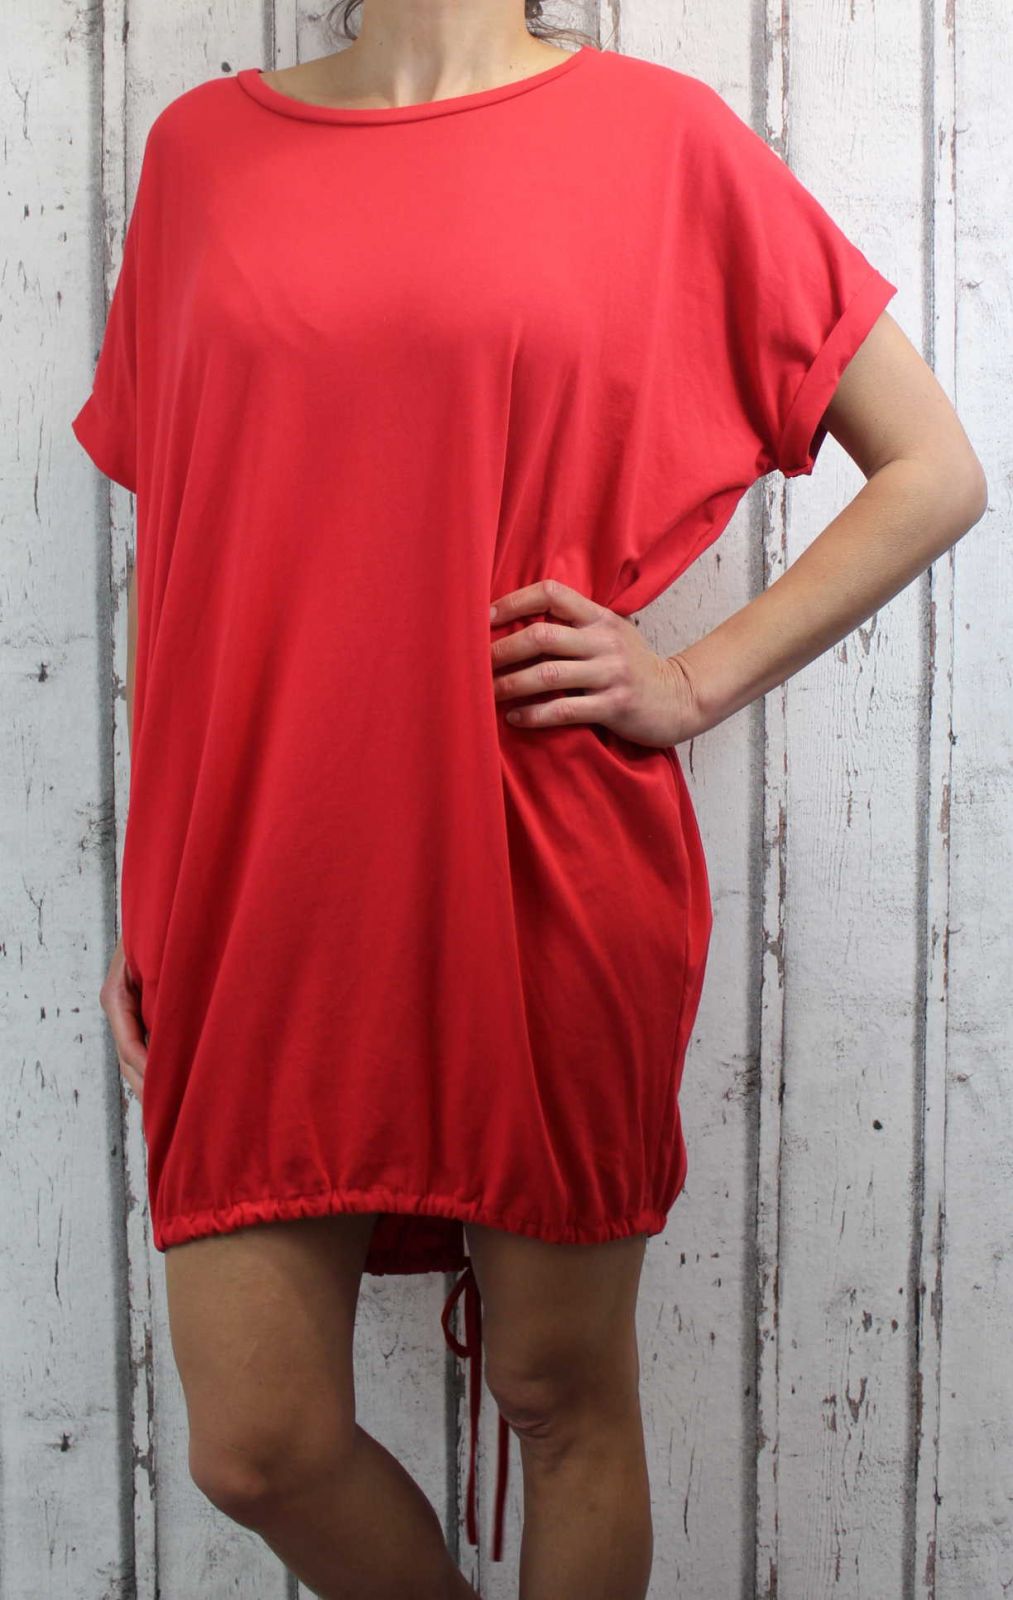 Dámské letní šaty, plážové šaty, dámská tunika, pohodlné šaty dámské šaty volný střih, červené volné šaty, bavlněné šaty Italy Moda